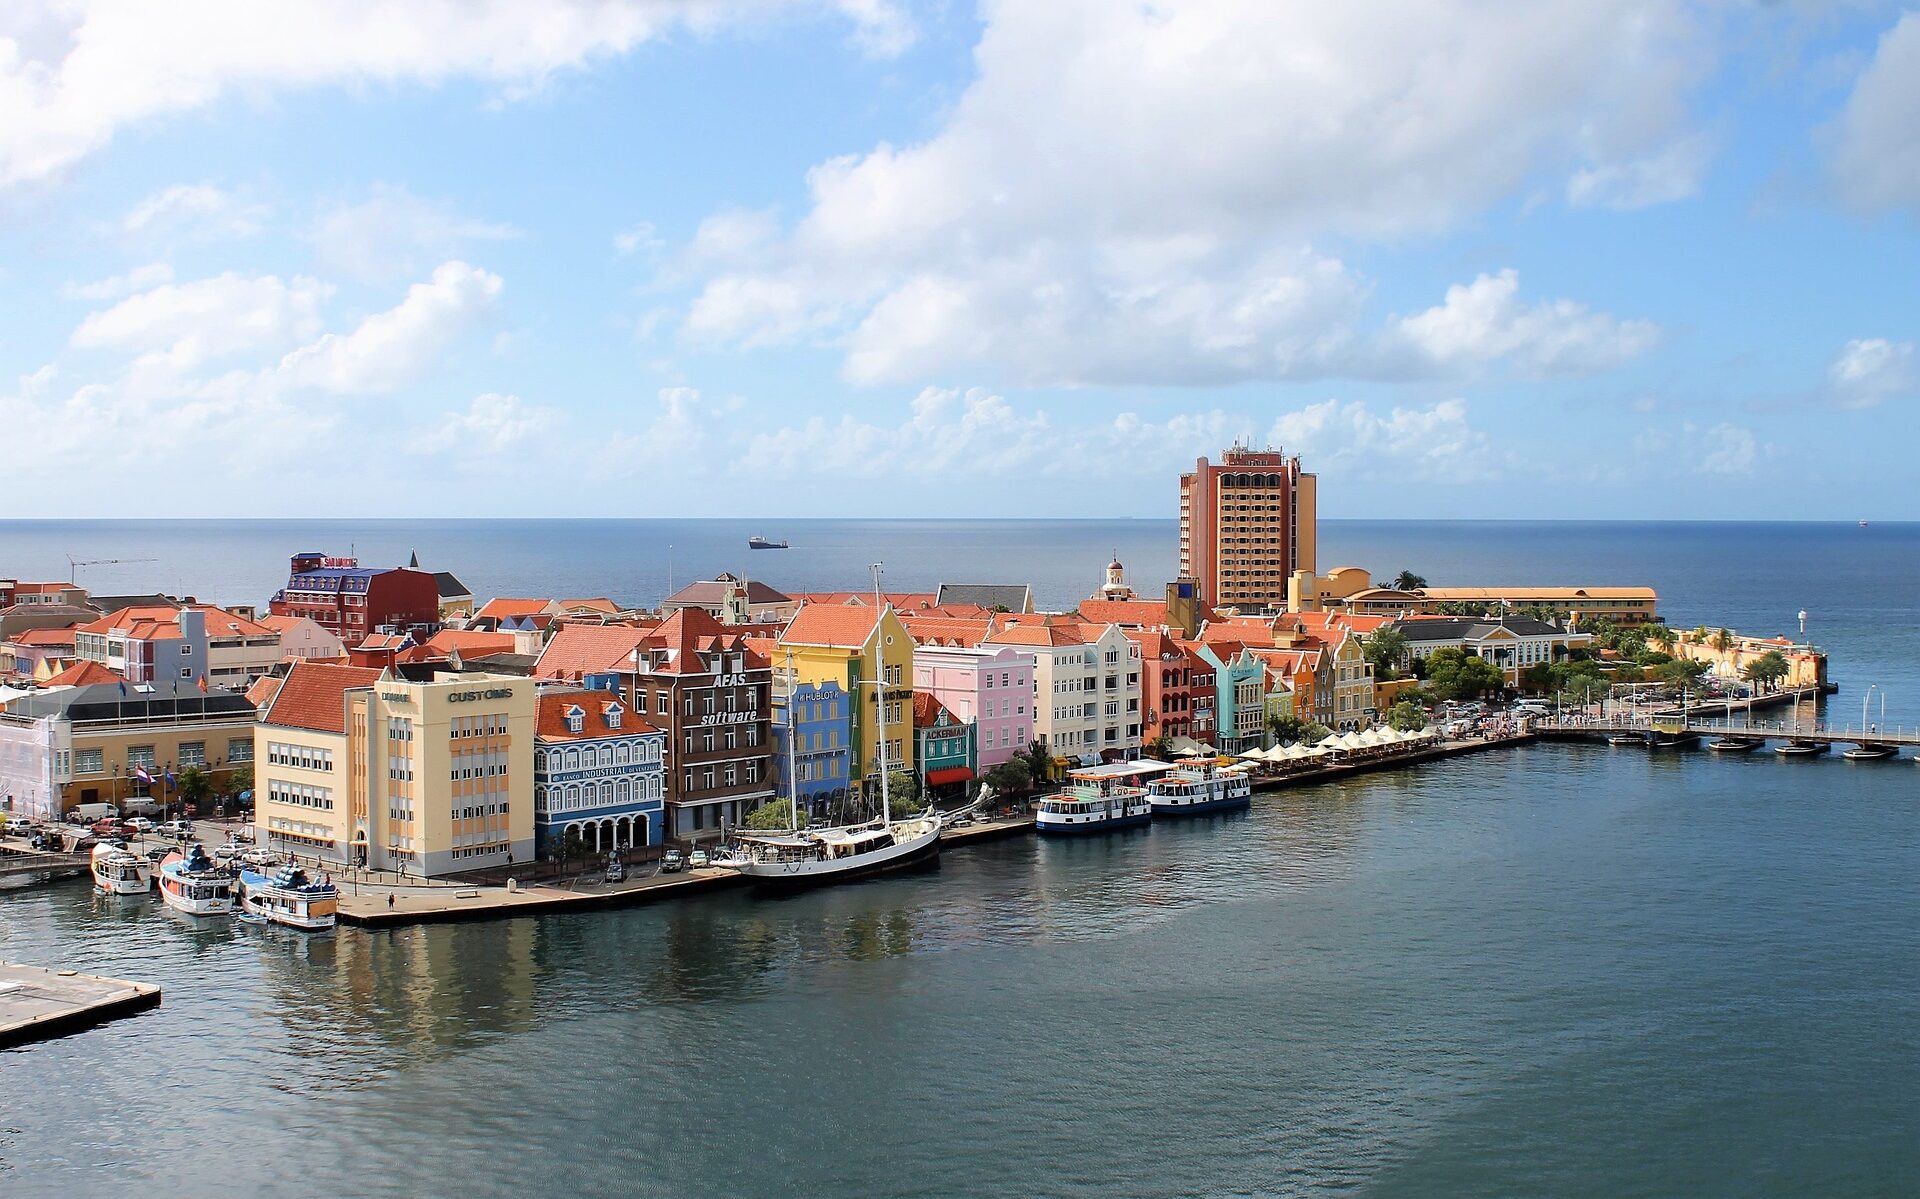 De kleurrijke handelskade op het eiland Curaçao, één van de ABC eilanden